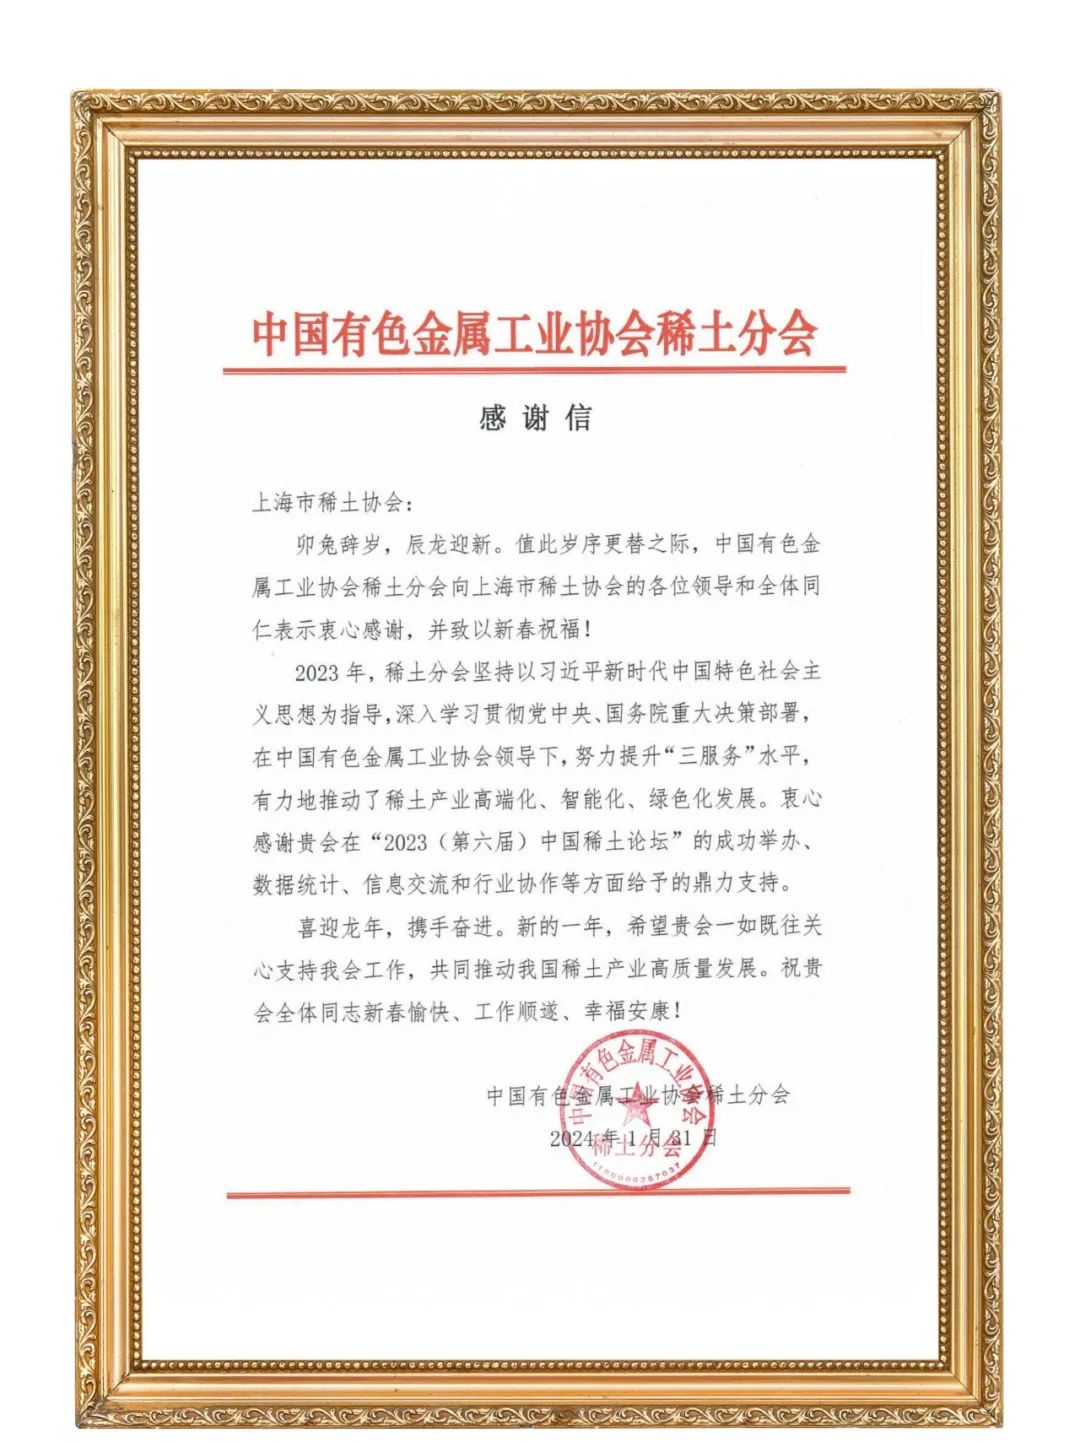 协会喜获中国有色金属工业协会稀土分会感谢信！